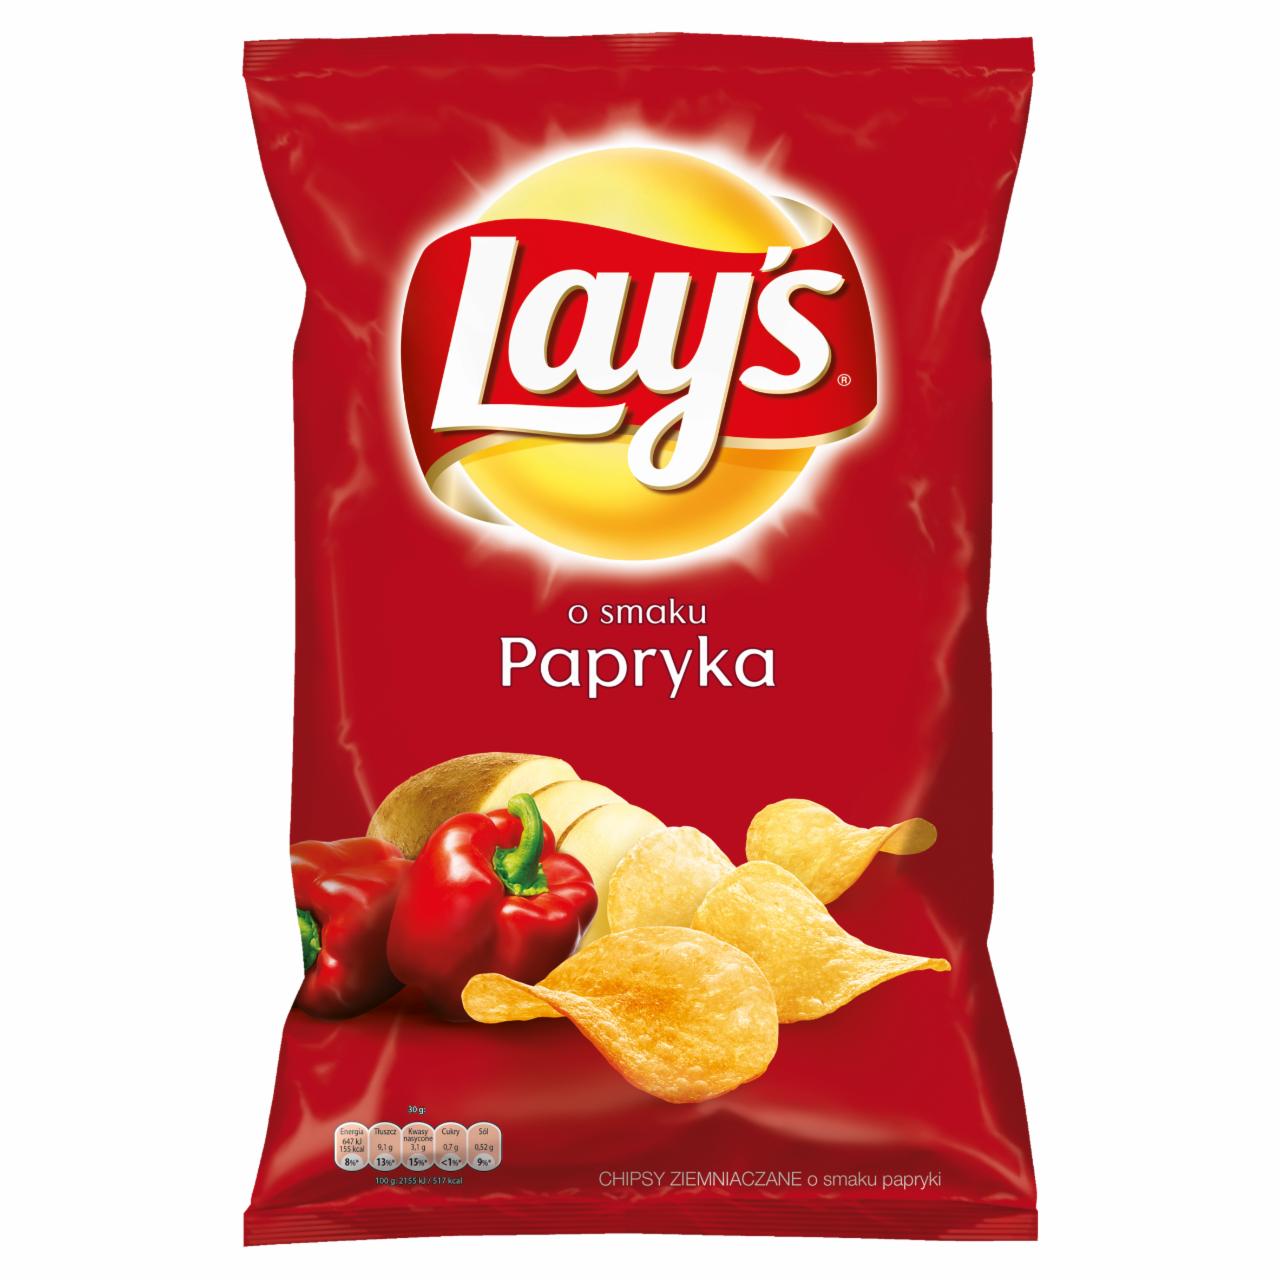 Zdjęcia - Lay's o smaku Papryka Chipsy ziemniaczane 150 g